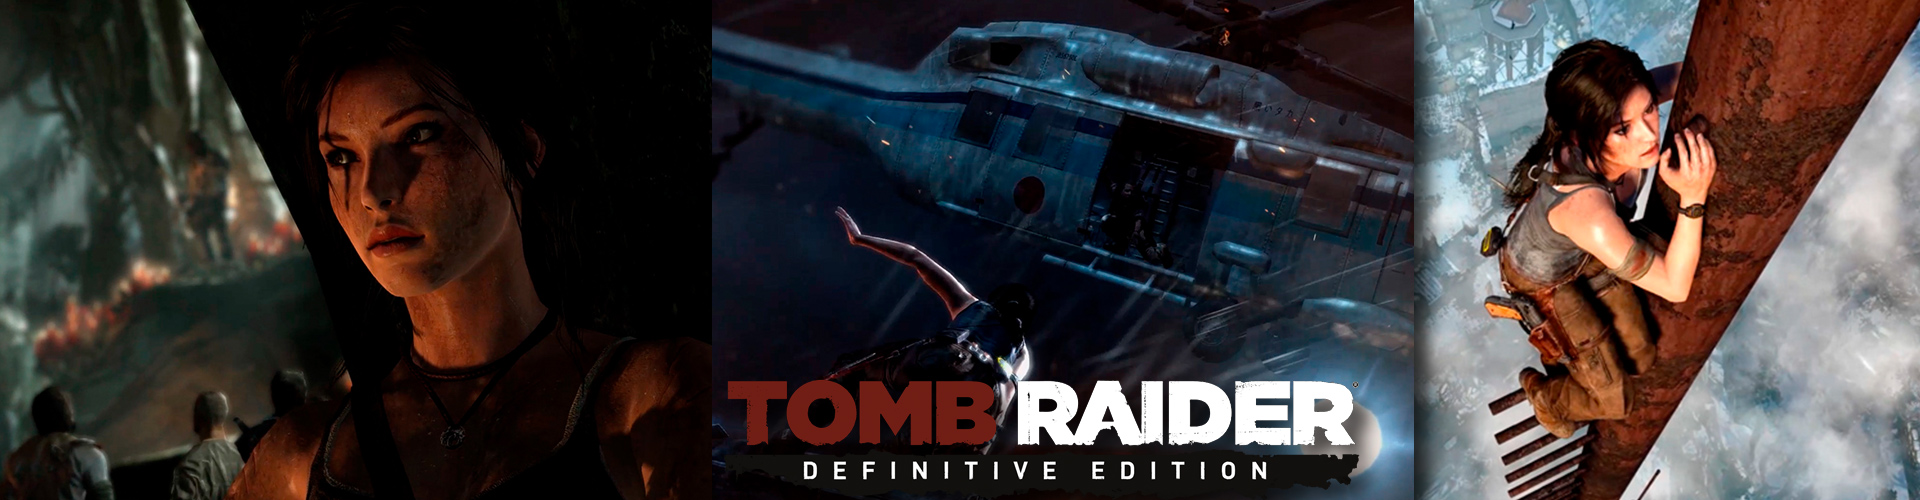 Animaciones Tomb Raider: Definitive Edition y más